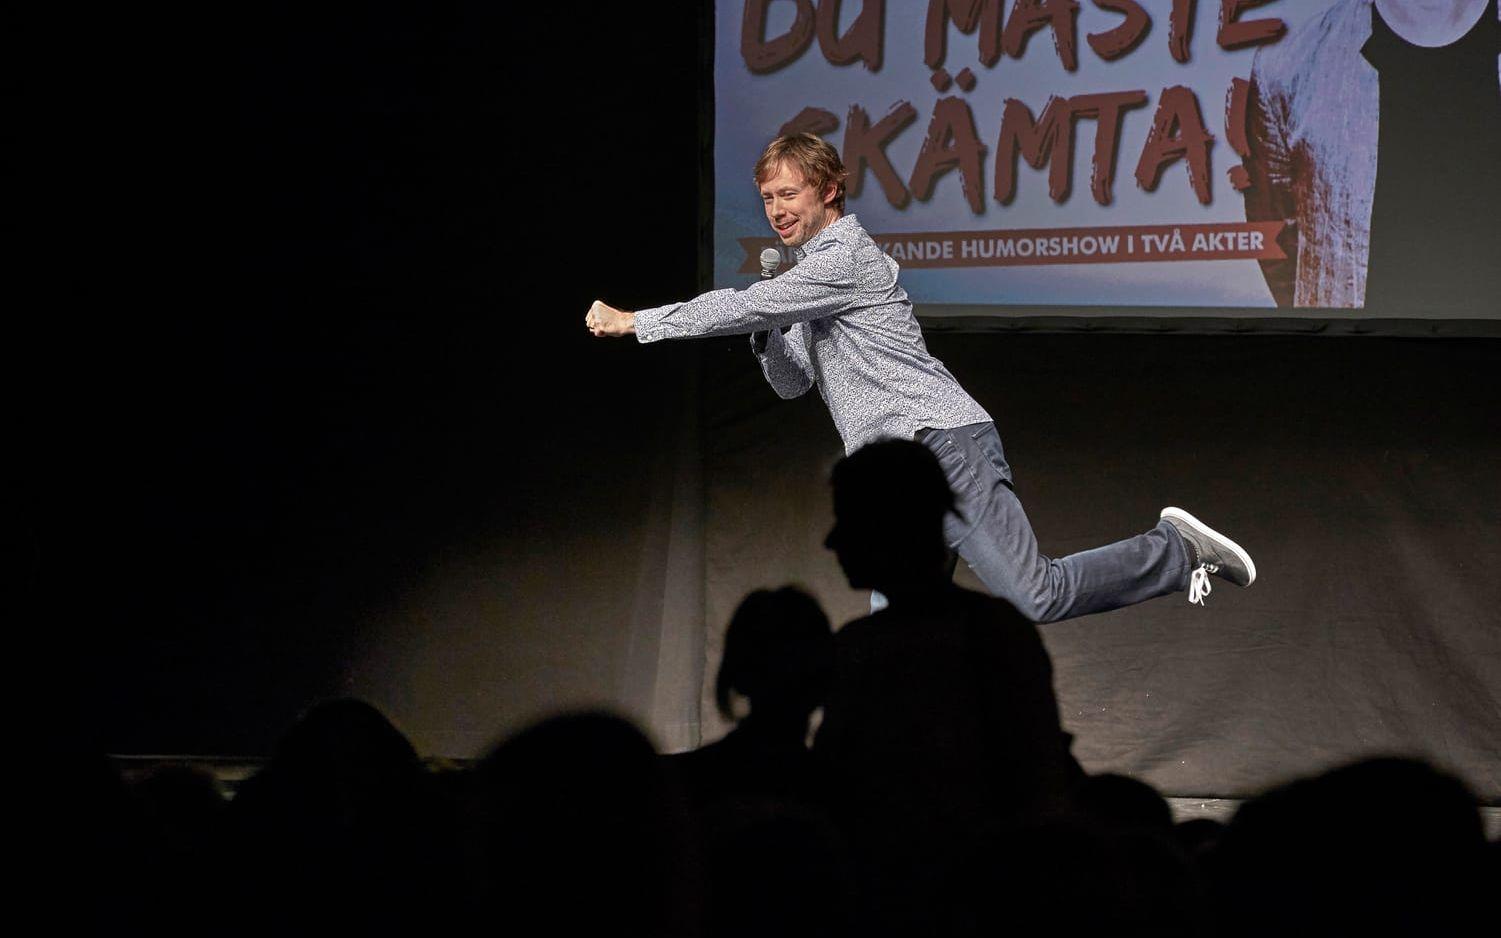 Tobias Persson som sig själv i show en"Du måste skämta!" i Falkenbergs stadsteater. Bild: Bo Håkansson, Bilduppdraget